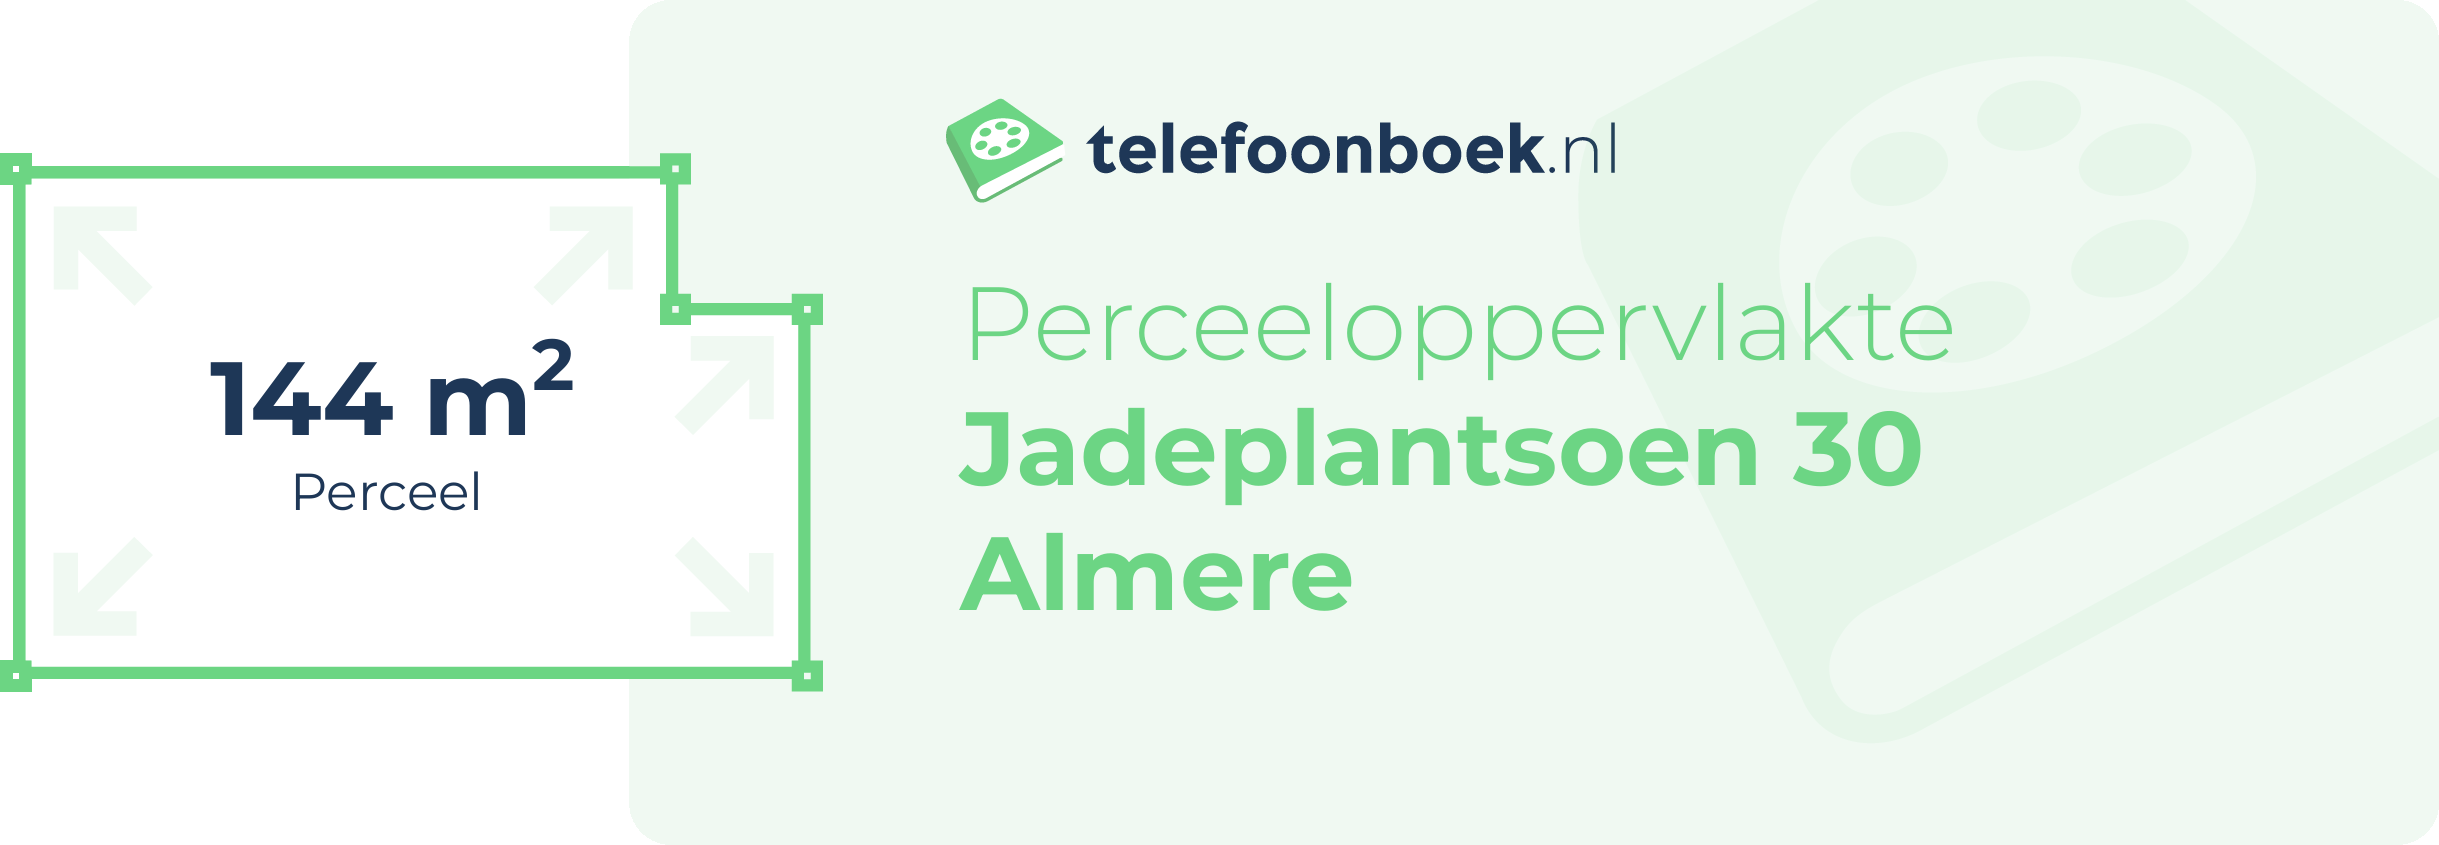 Perceeloppervlakte Jadeplantsoen 30 Almere